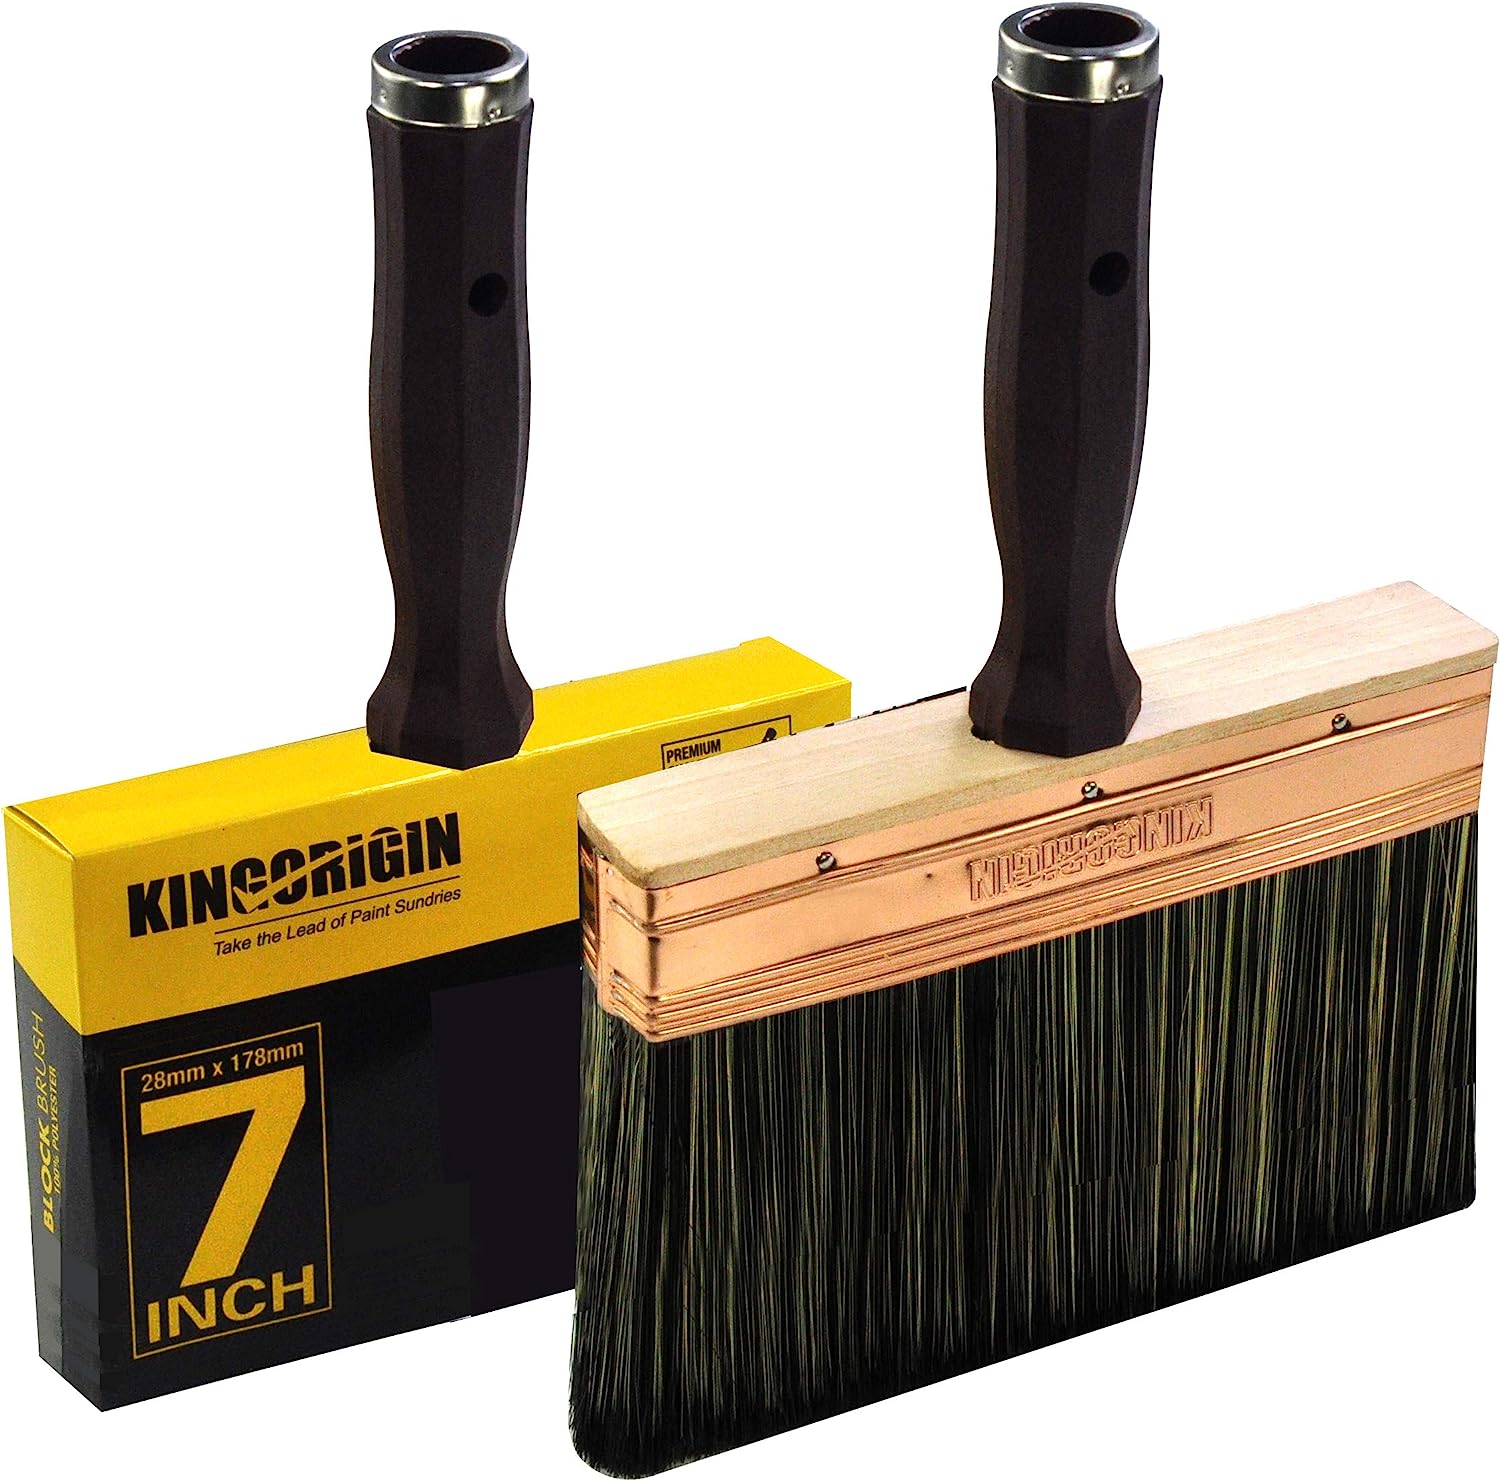 1 Piece Deck Stain Brush by Kingorigin 7 Inch Block [...]